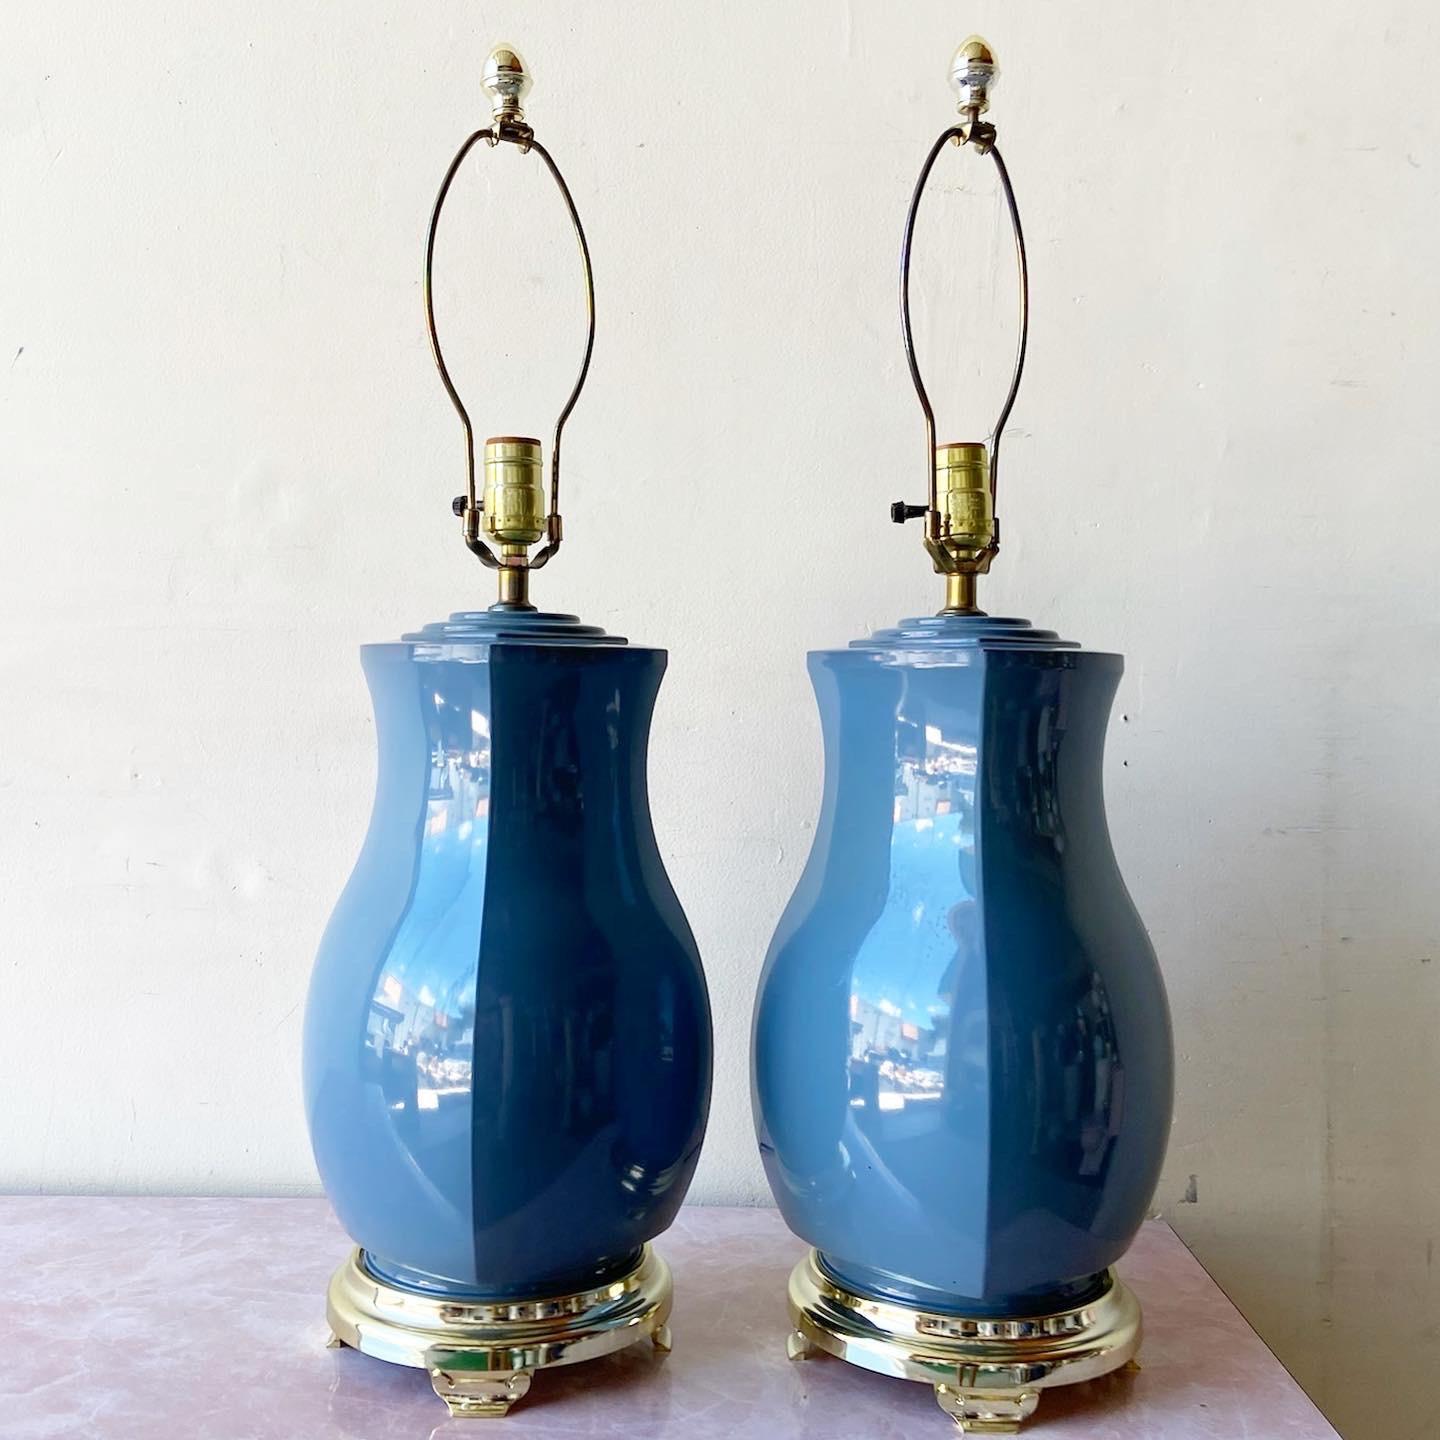 Wunderschönes Paar postmoderner Porzellan-Tischlampen. Der Körper weist einen 4-seitigen blauen Glanz auf.

3-Wege-Beleuchtung
